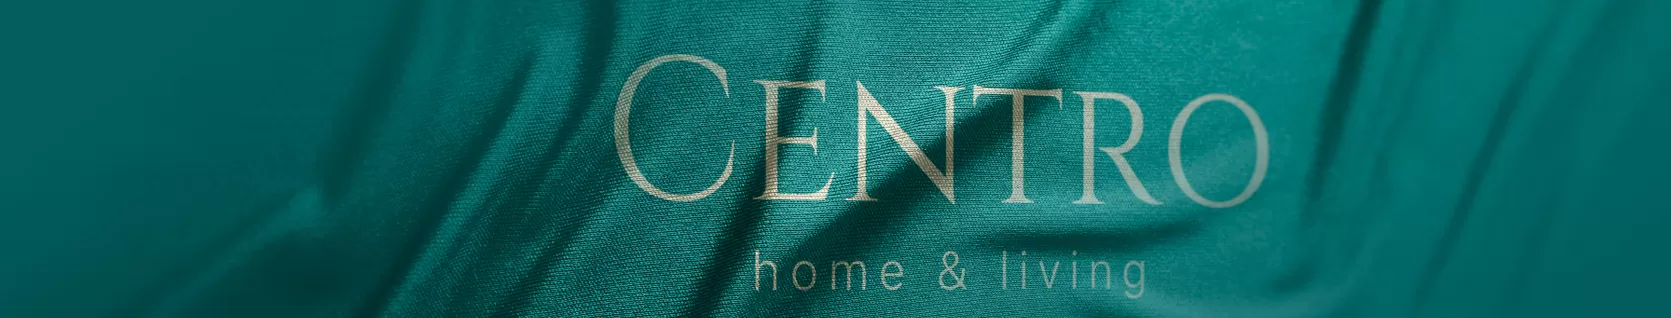 Centro Tekstil - centro textile